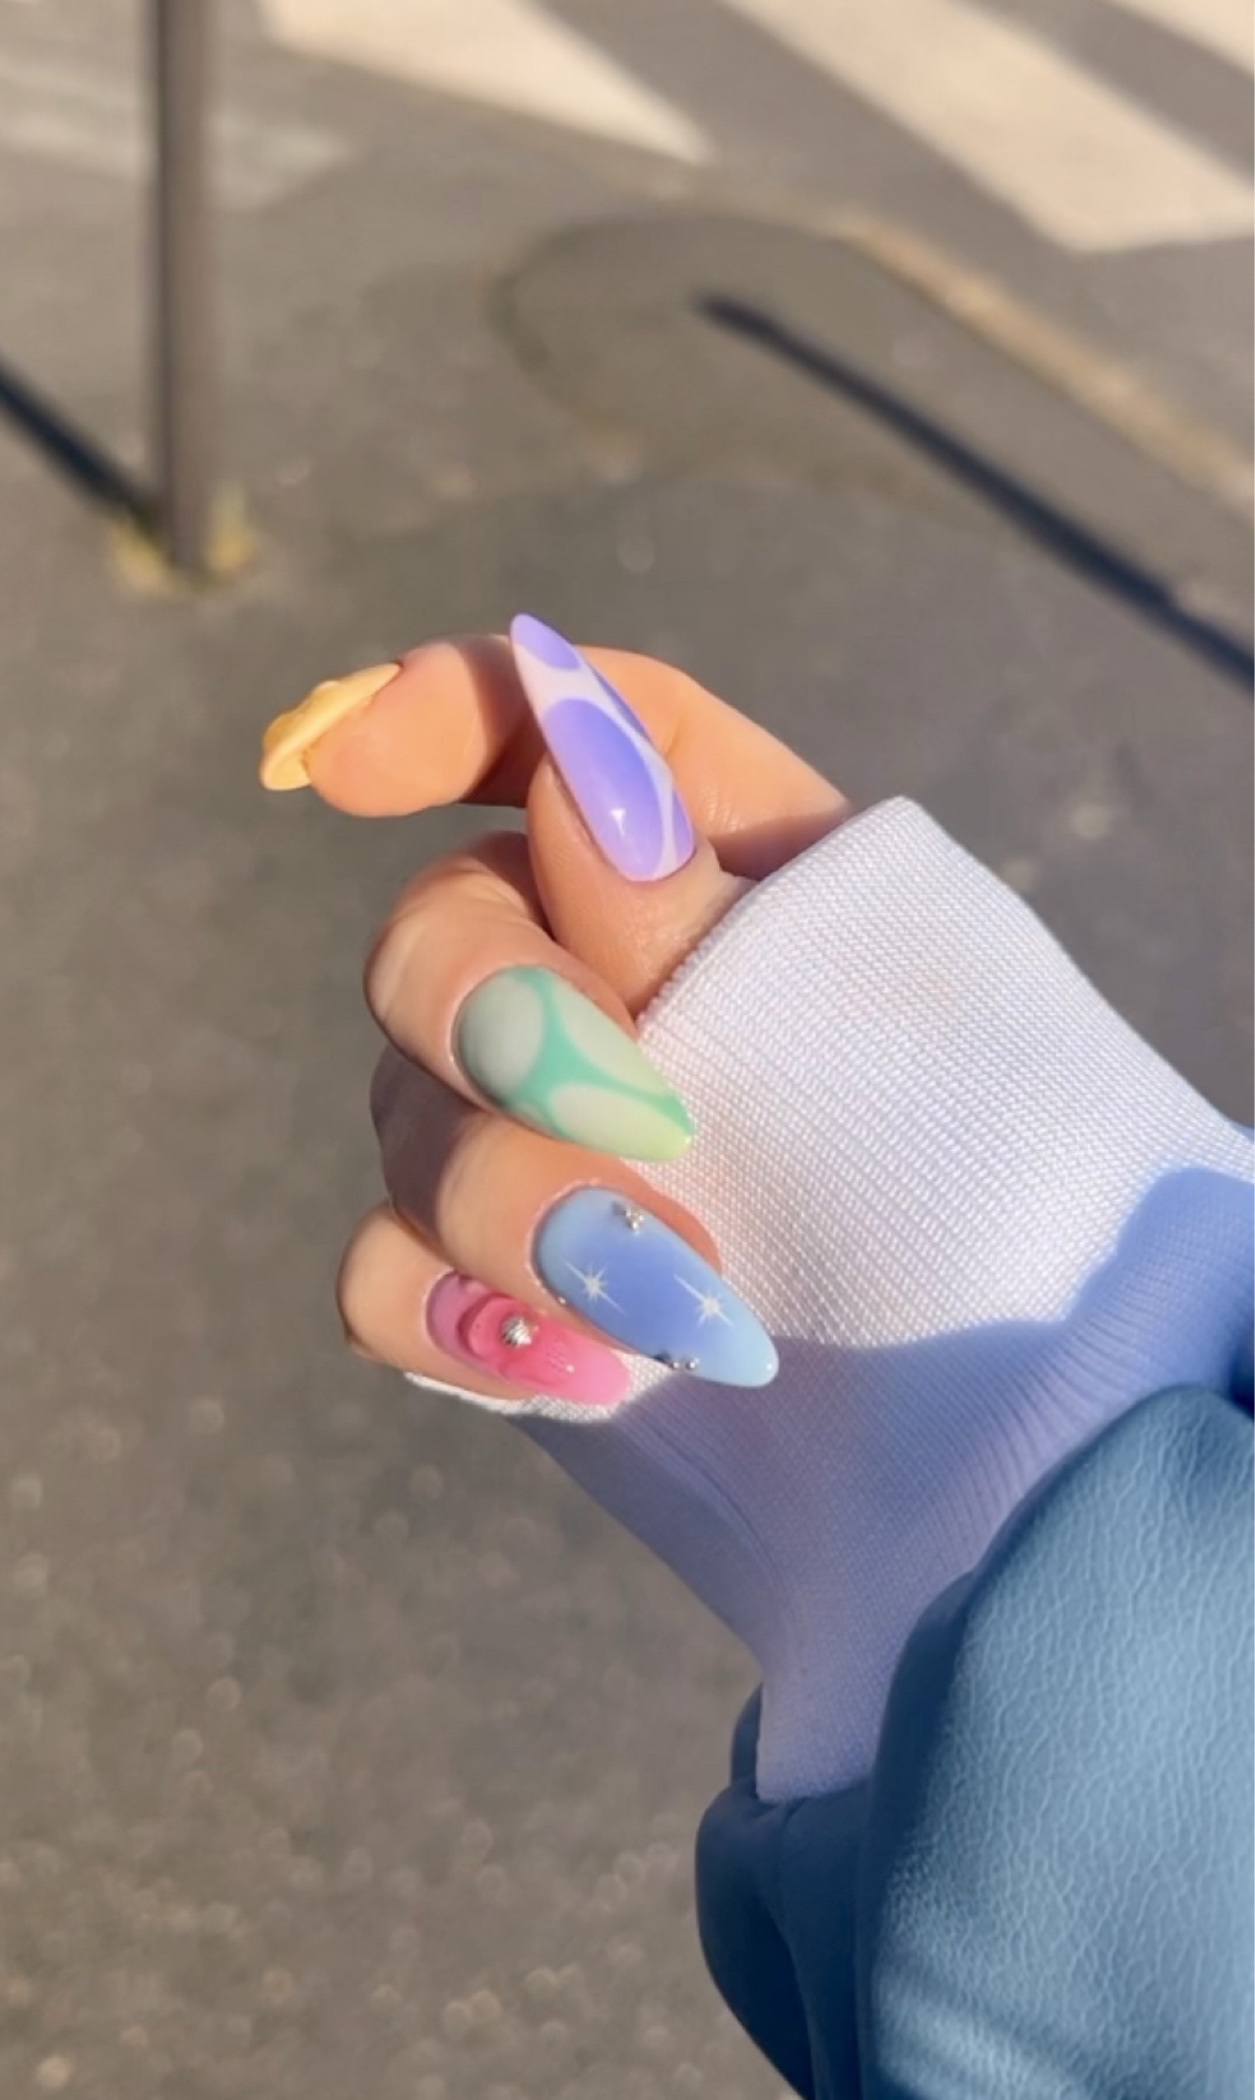 Rainbow nails 🌈